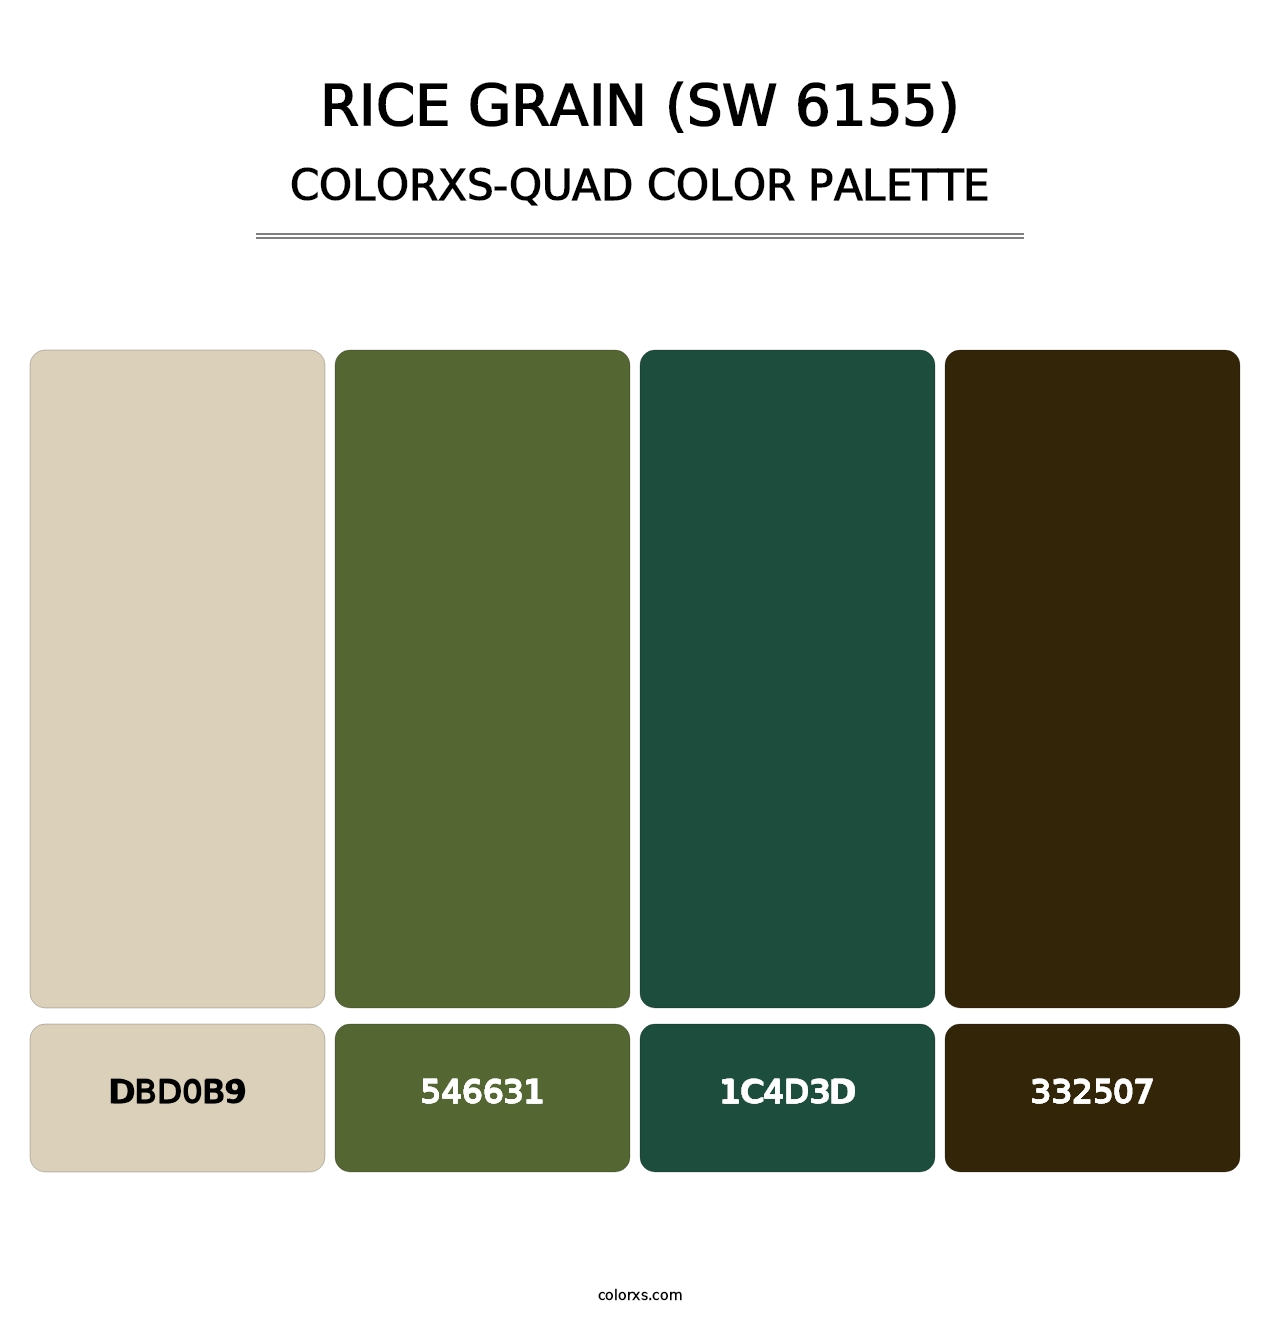 Rice Grain (SW 6155) - Colorxs Quad Palette